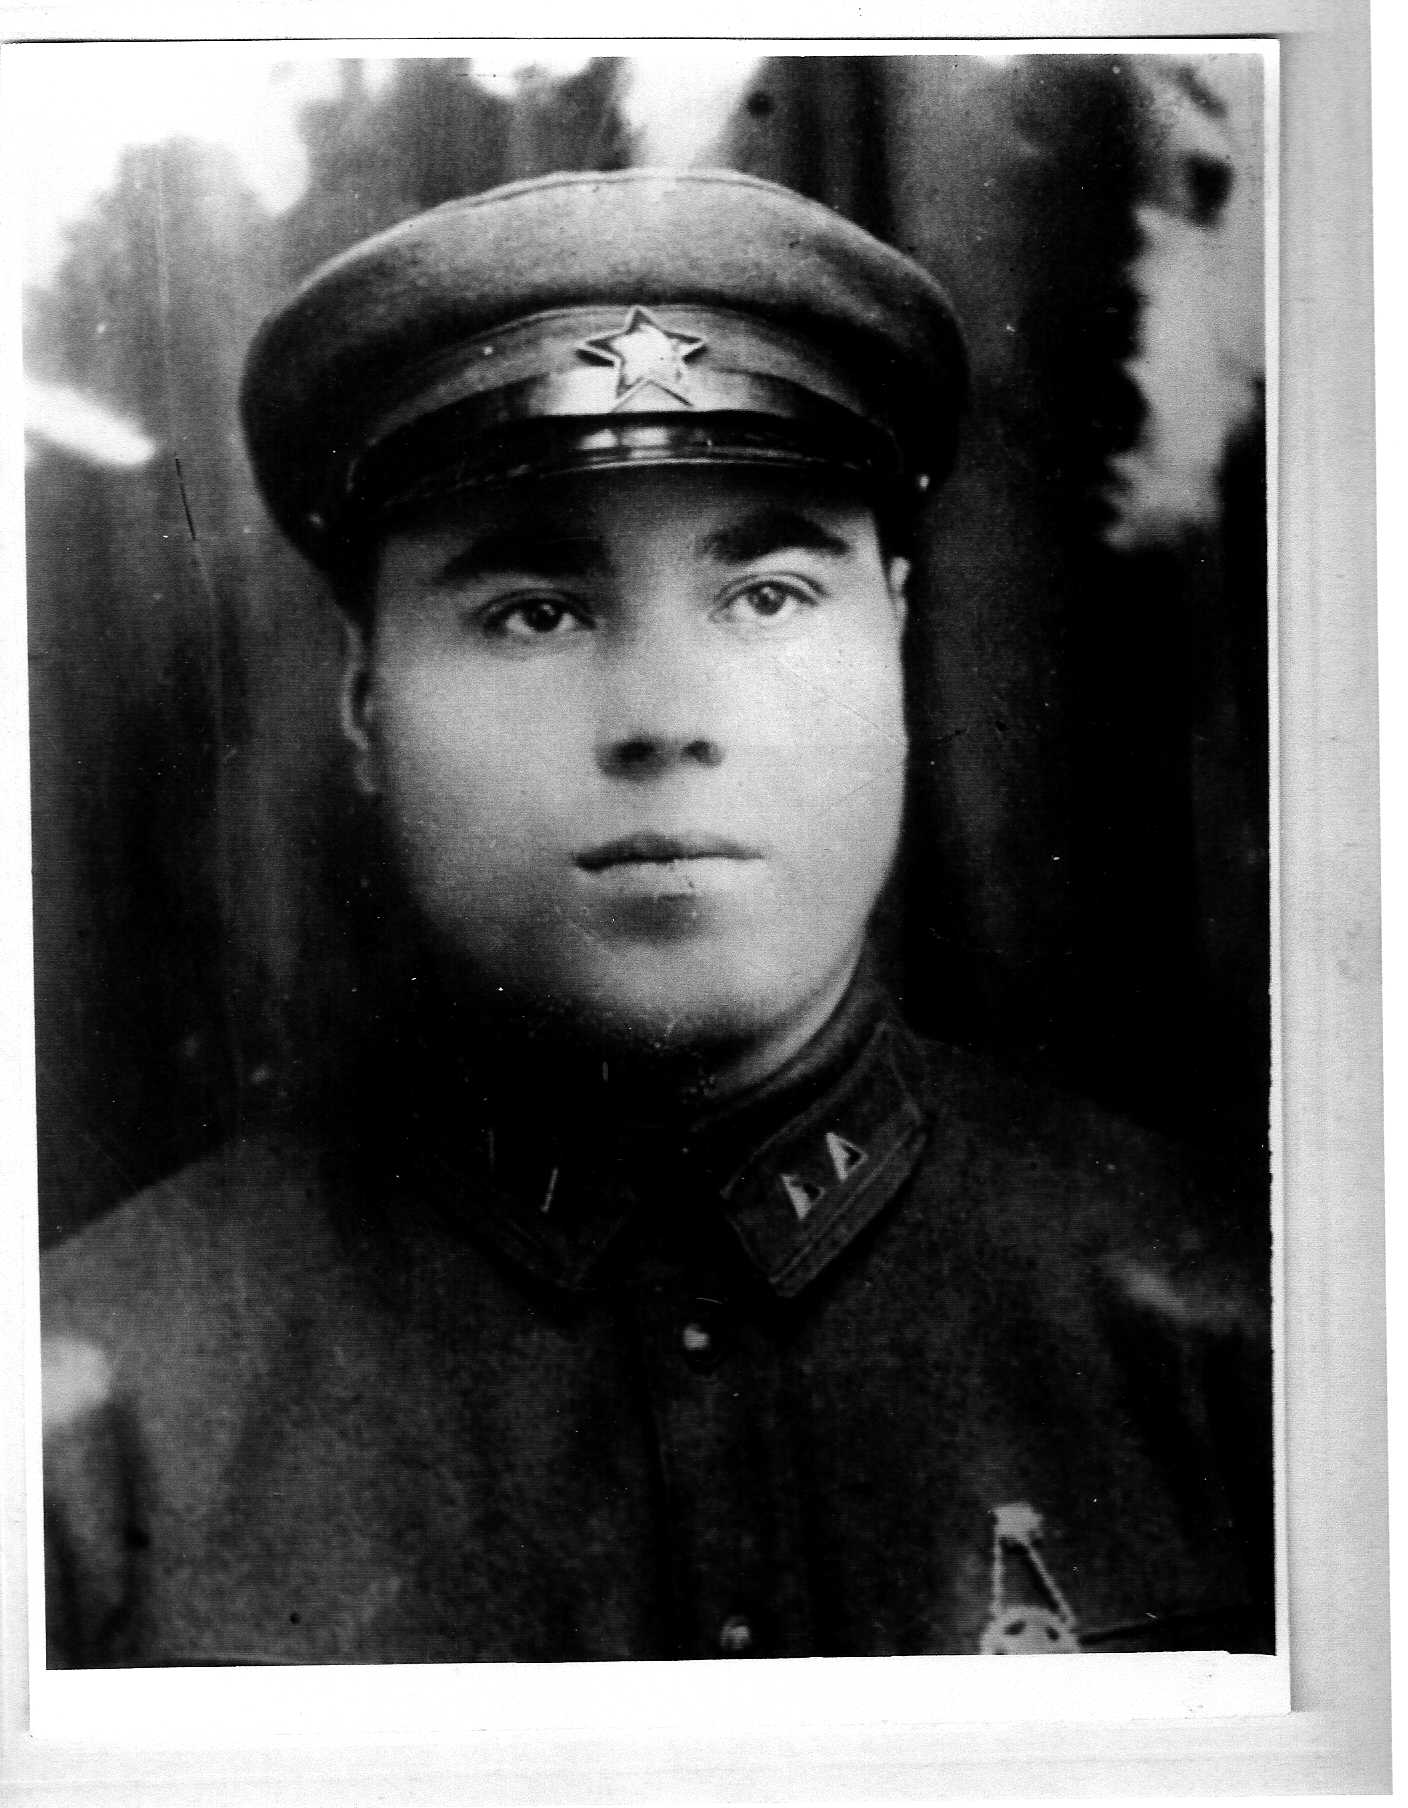 Найти фото участника войны 1941 1945 по фамилии